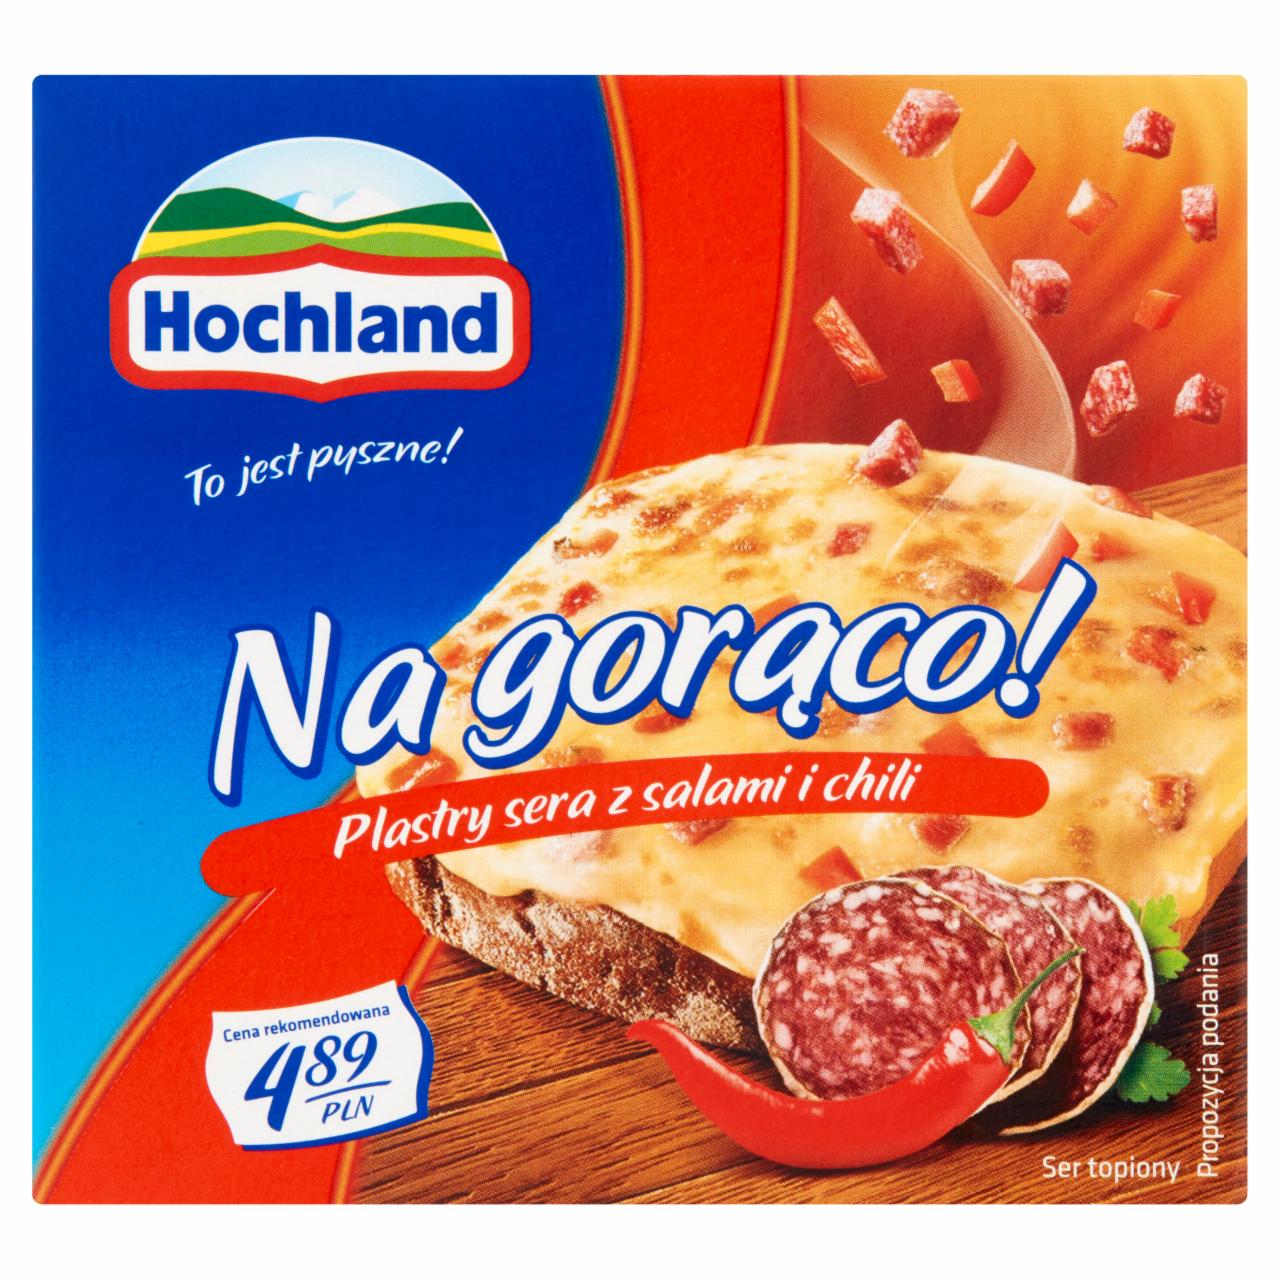 Zdjęcia - Hochland Na gorąco! Plastry sera z salami i chili 144 g